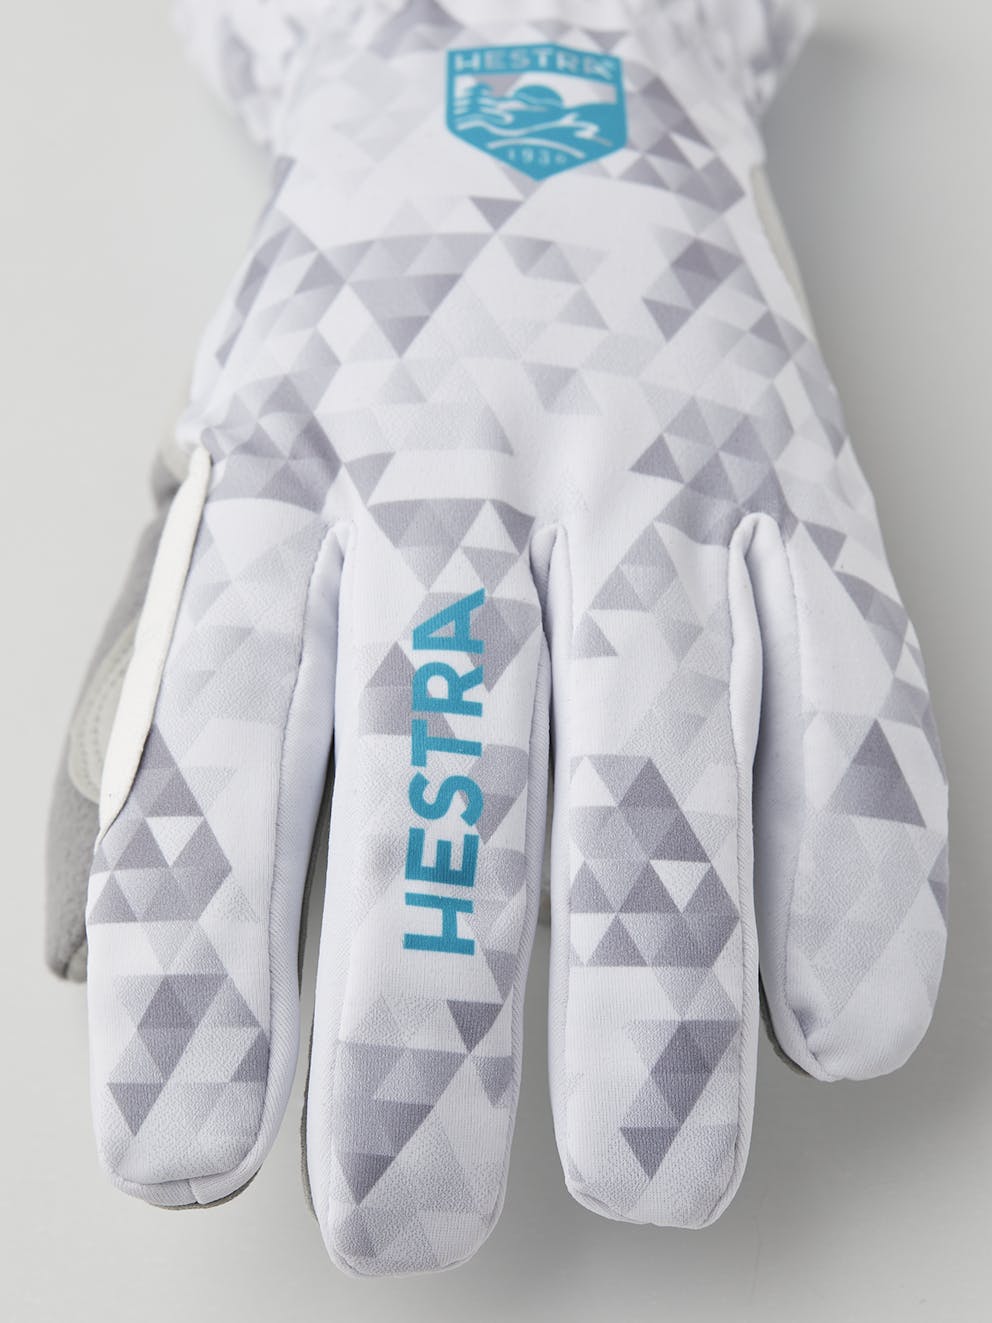 elegant kleding stof krant Windstopper Touring 5-finger - Offwhite print | Hestra Gloves